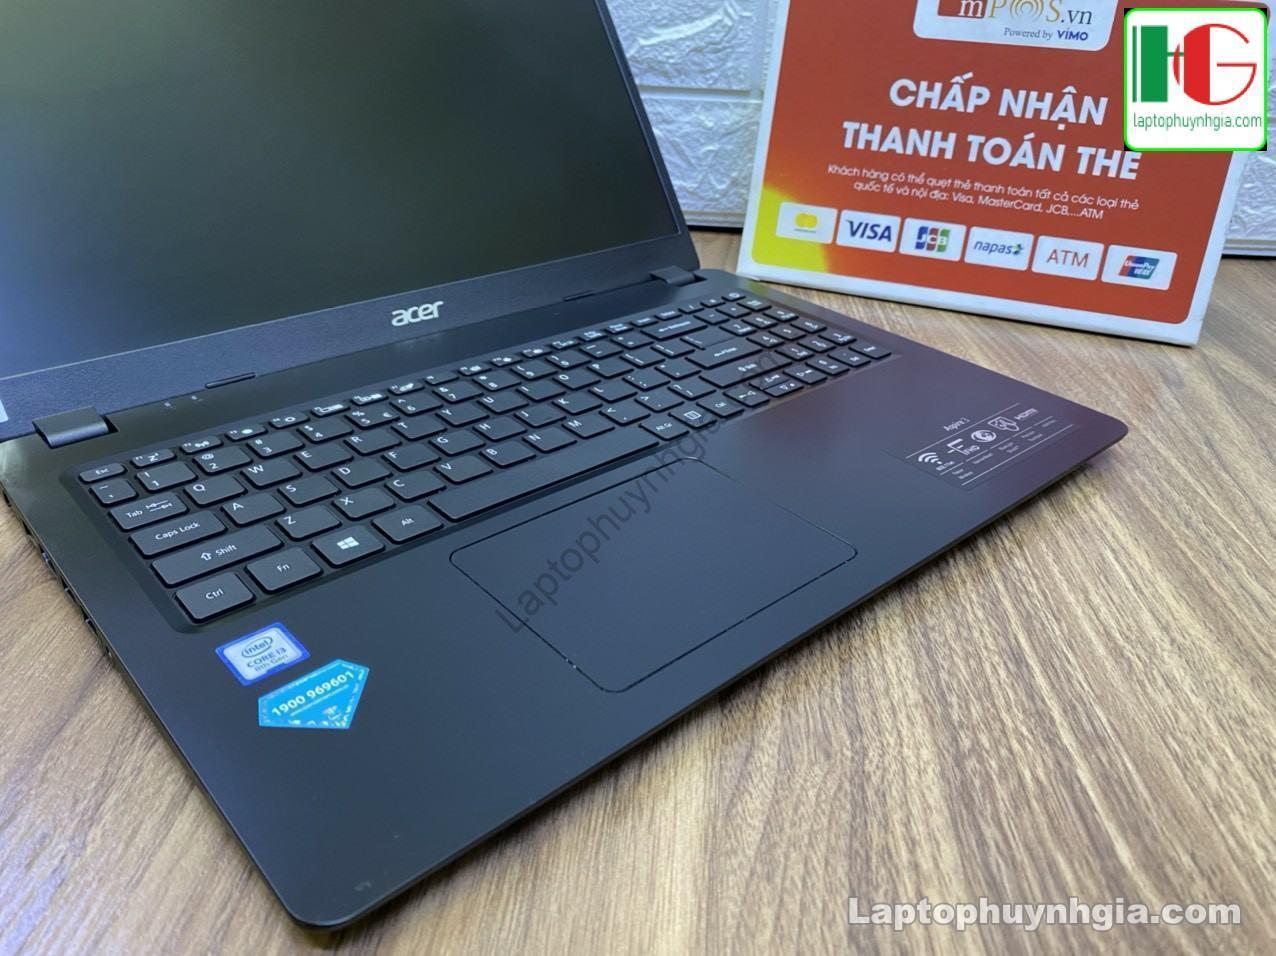 Acer A315 I3 8130u 4G SSD 256G LCD 15 laptophuynhgia.com 4 - Laptop Cũ Bình Dương Huỳnh Gia